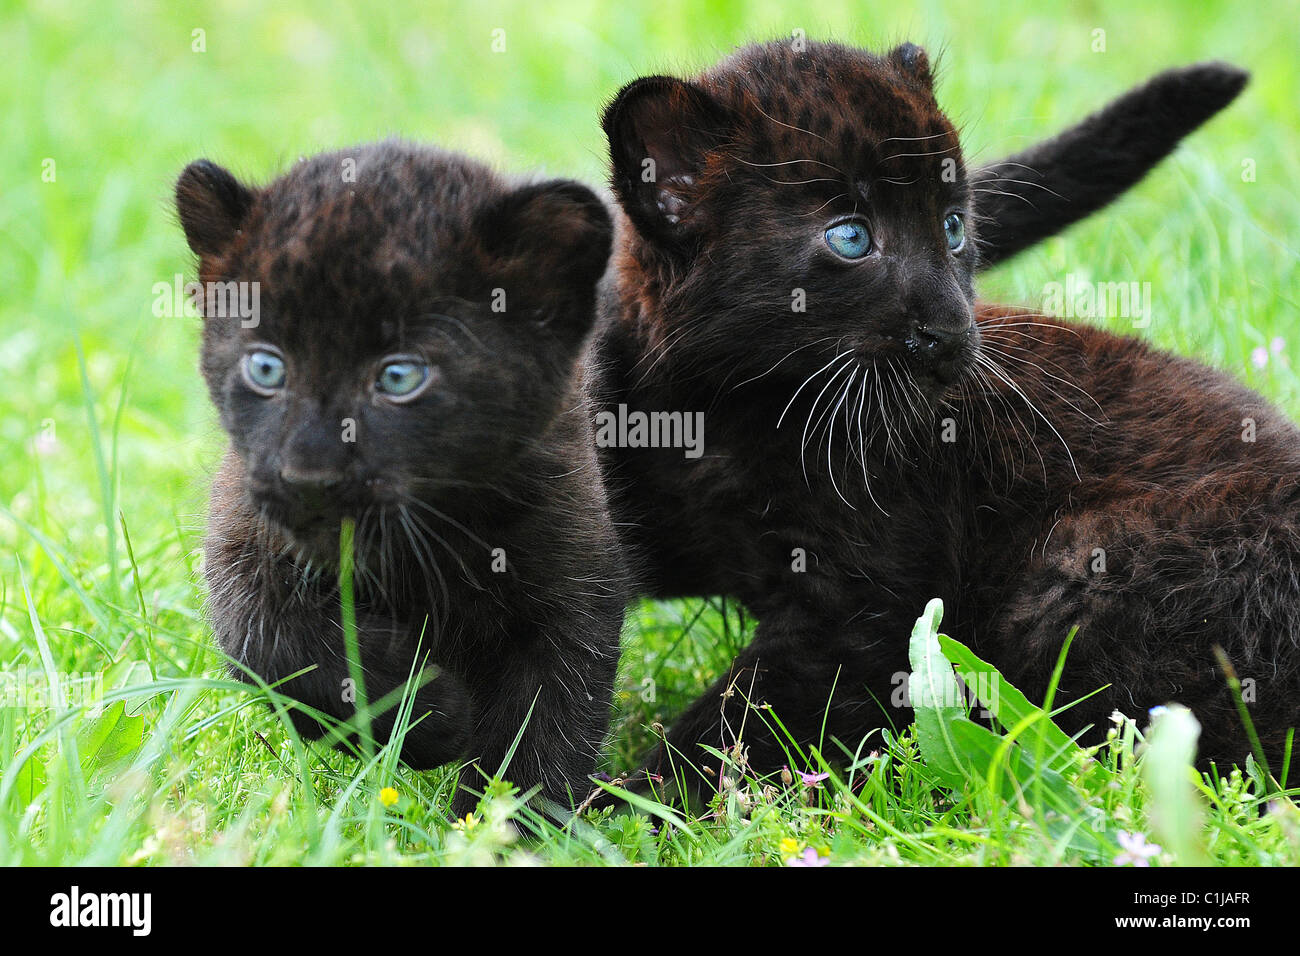 panther cubs